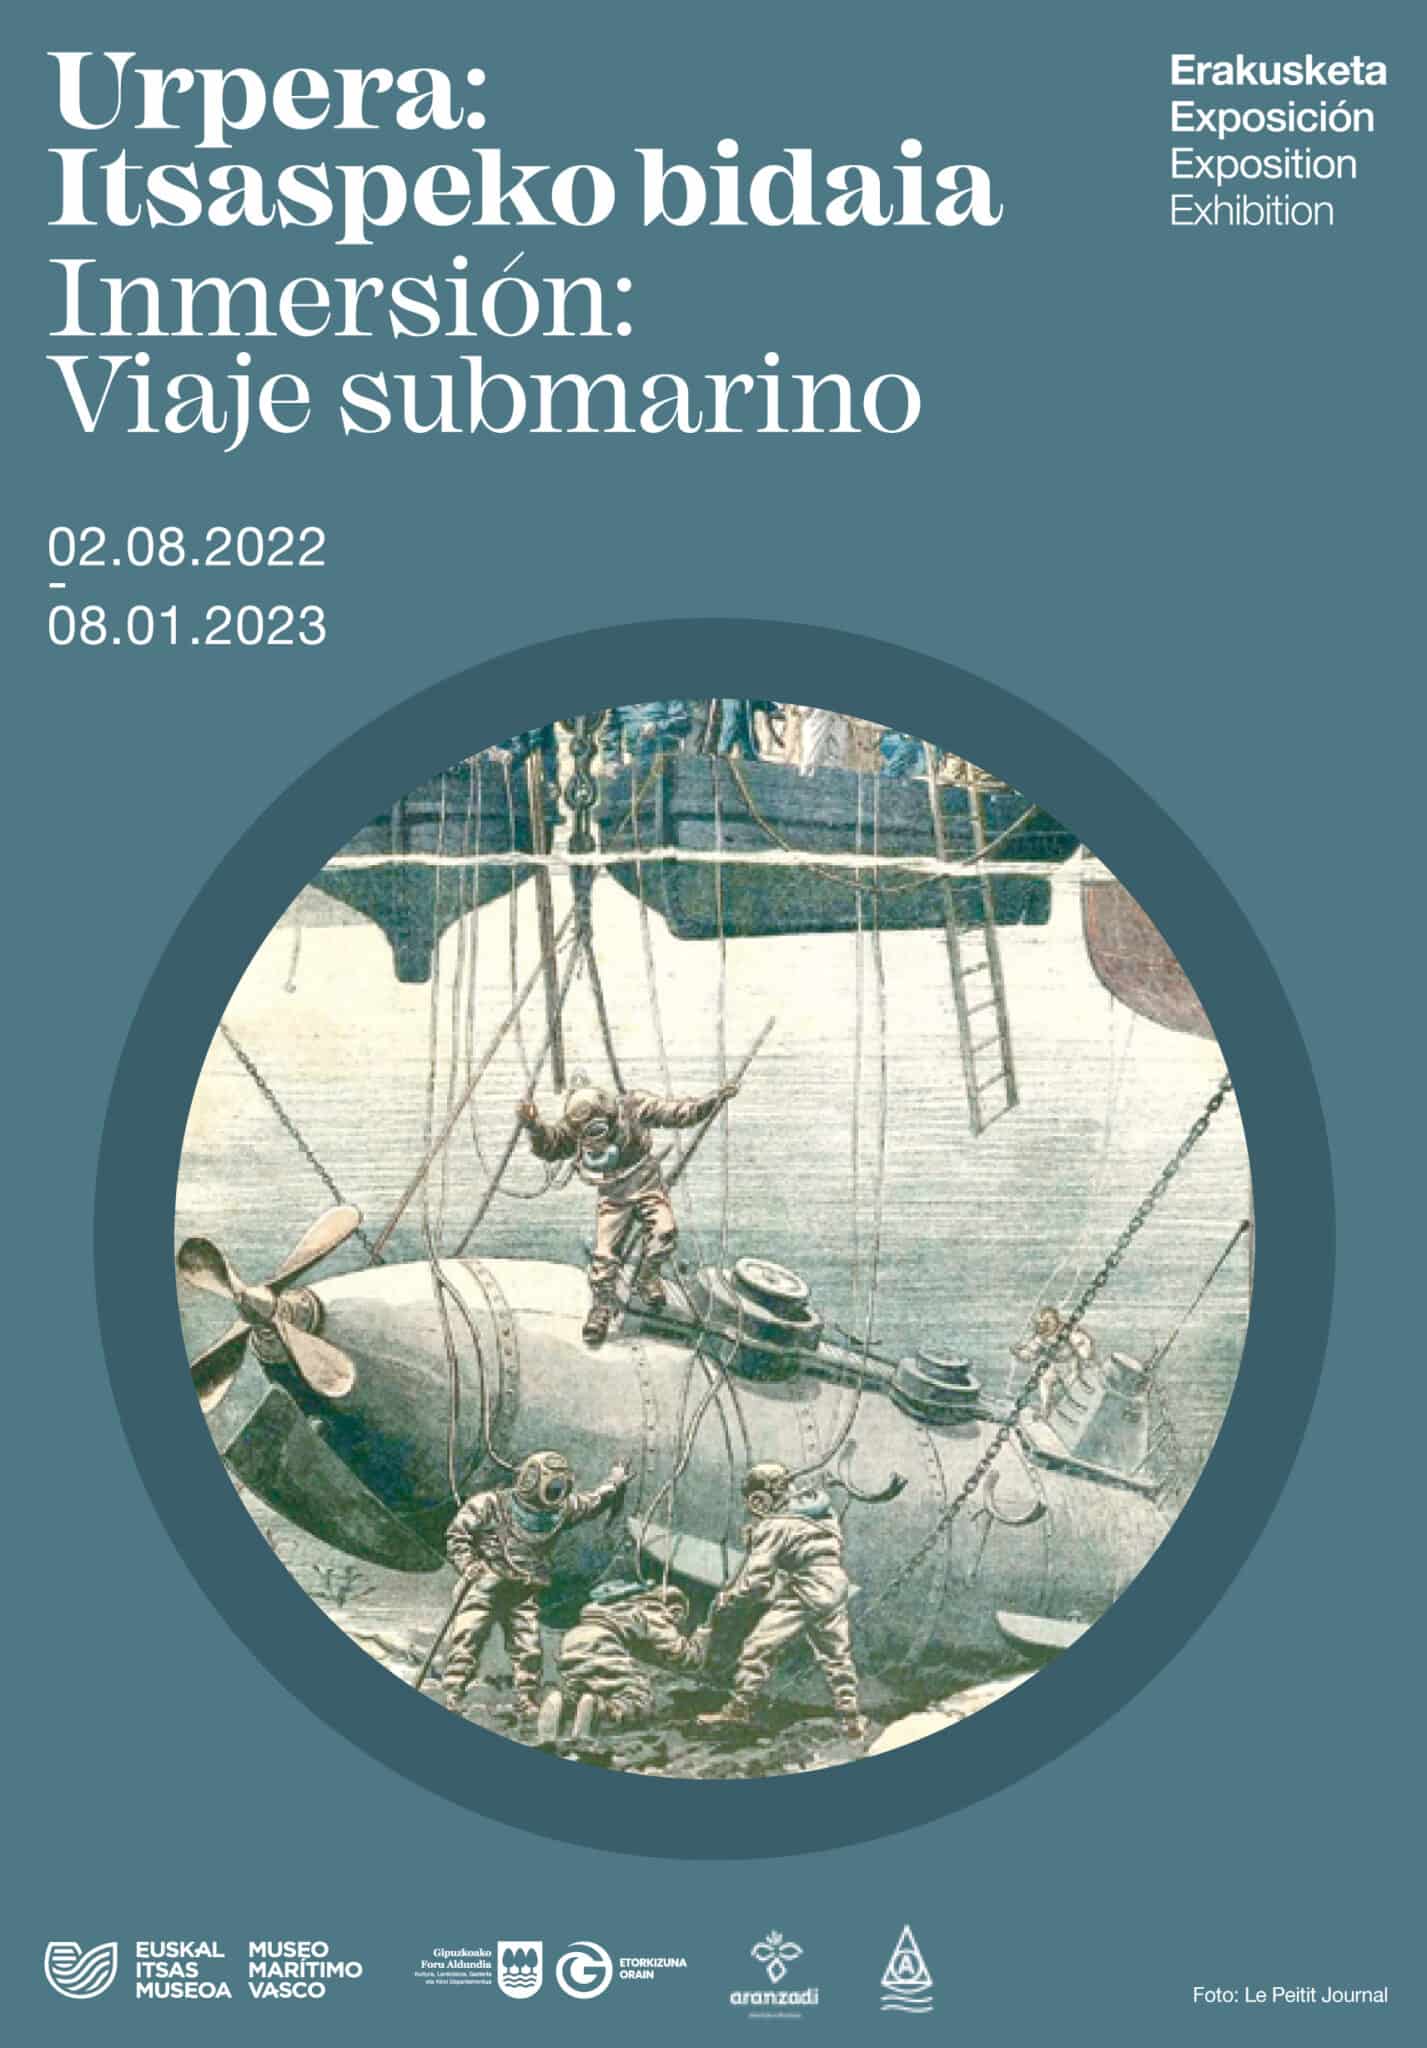 EX ViajeSubmarino Cartel scaled - La historia del buceo, desde la antigüedad, en Euskal Itsas Museoa